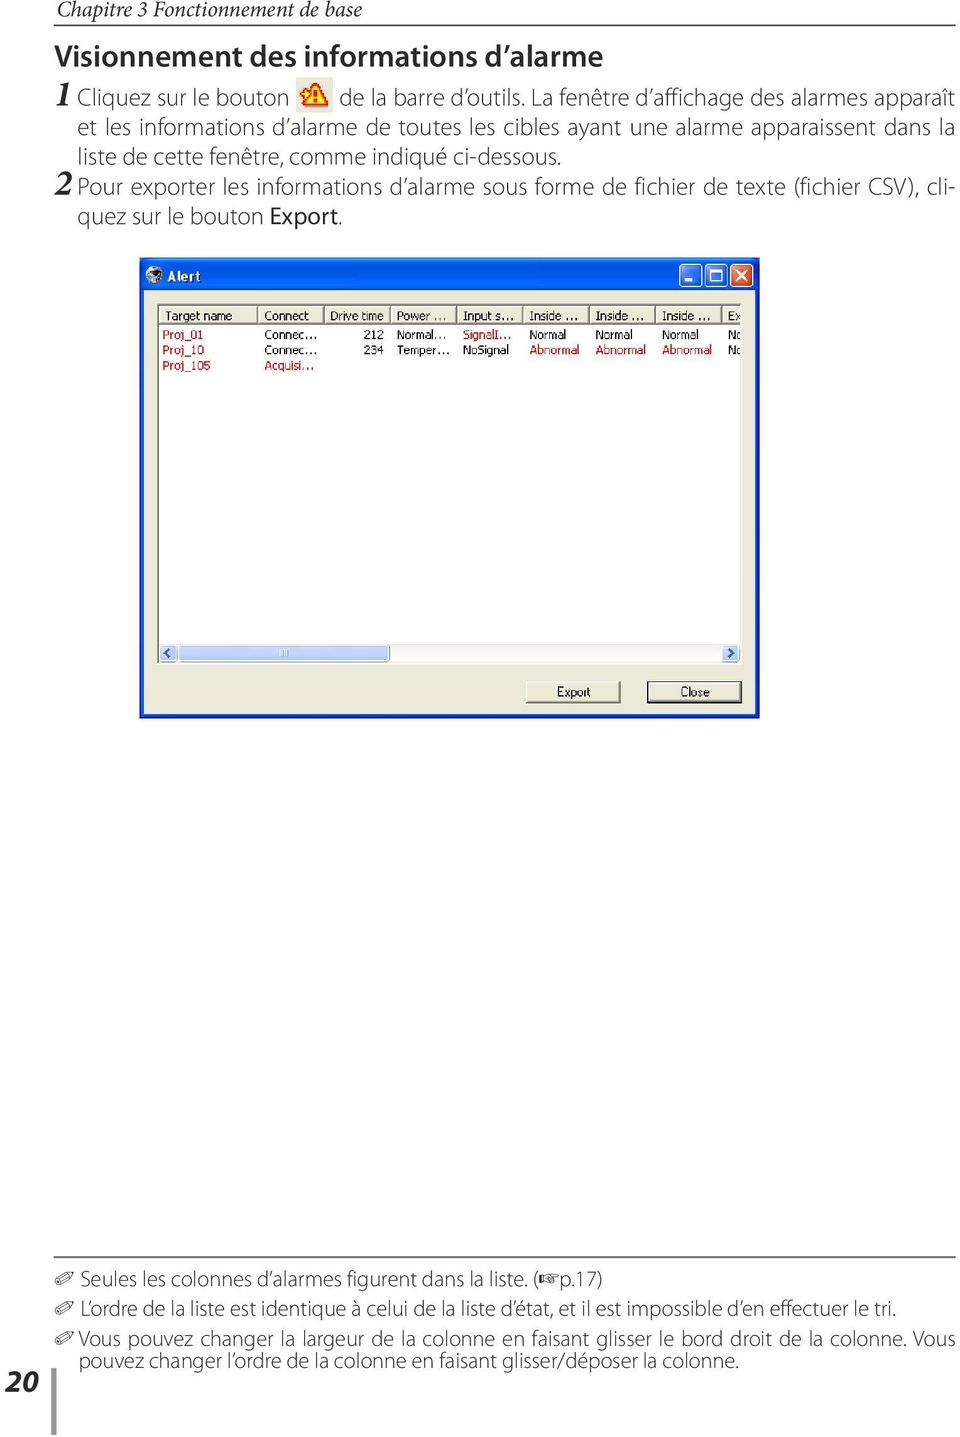 2 Pour exporter les informations d alarme sous forme de fichier de texte (fichier CSV), cliquez sur le bouton Export. 20 0 Seules les colonnes d alarmes figurent dans la liste. (+p.